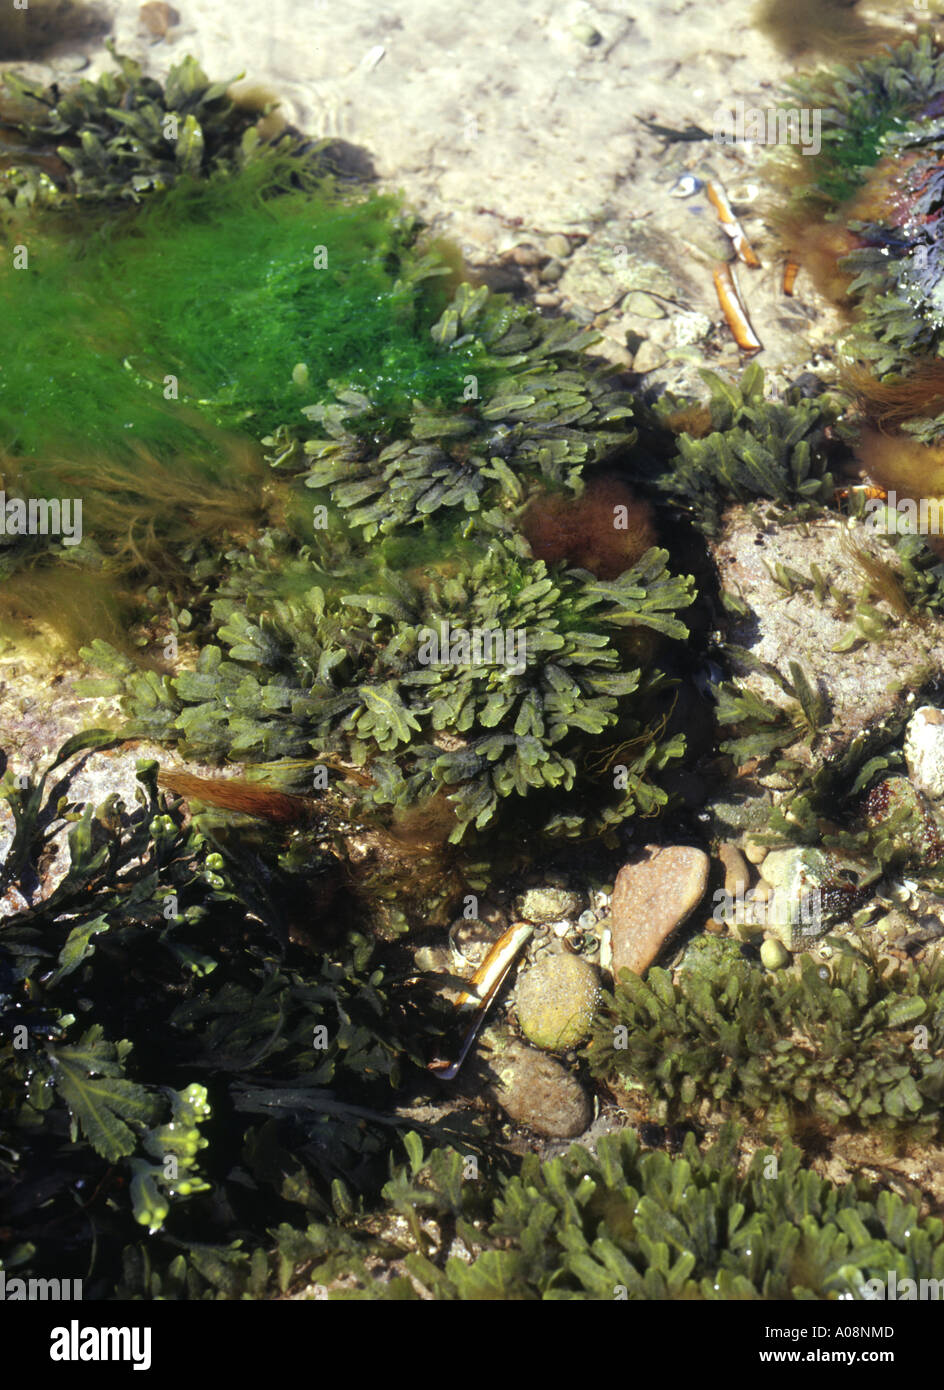 Dh rock pool ALGHE MARINE UK Sea life gusci rock e dentata wrack alga marina Fucus seratus close up Foto Stock